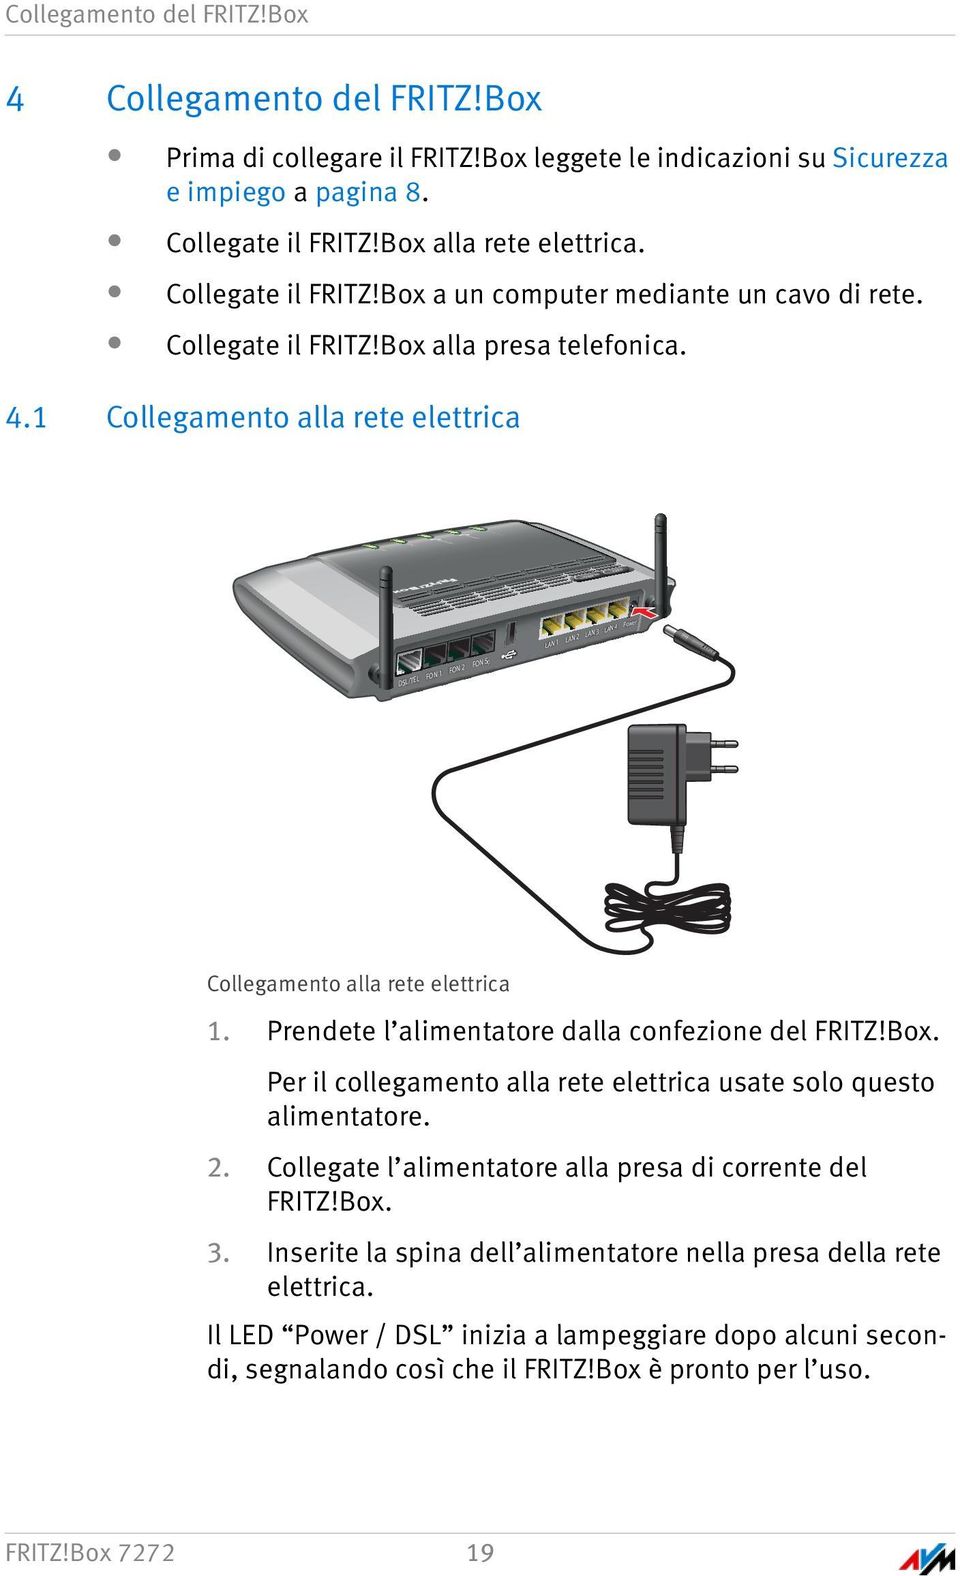 4.1 Collegamento alla rete elettrica FON S0 DSL/TEL FON 1 FON 2 LAN 1 LAN 2 LAN 3 LAN 4 Power Collegamento alla rete elettrica 1. Prendete l alimentatore dalla confezione del FRITZ!Box.